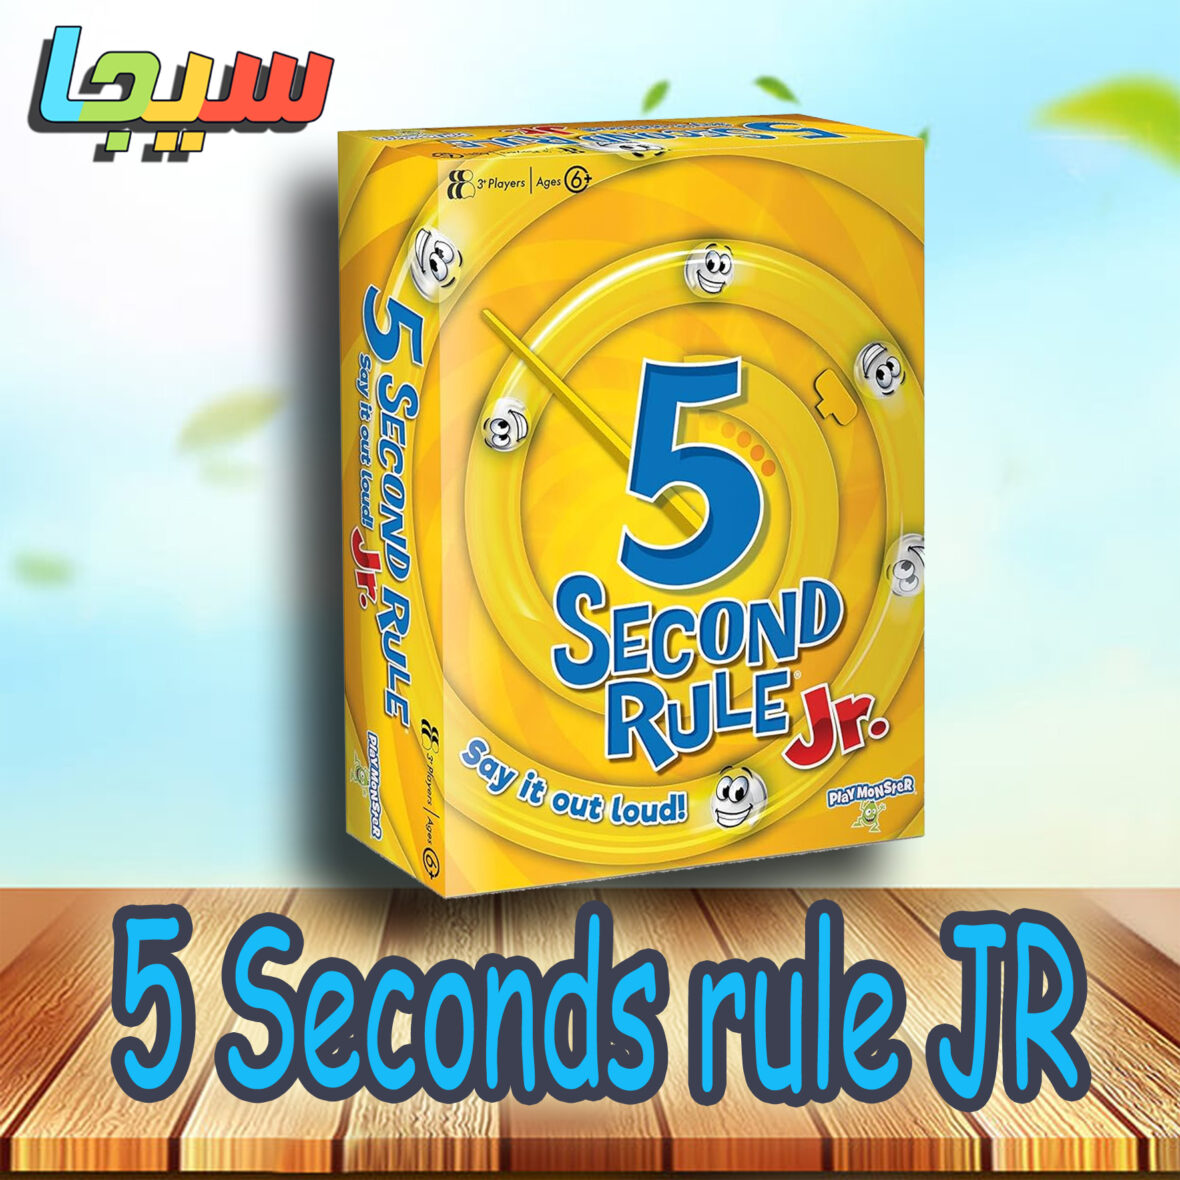 5Seconds rule JR